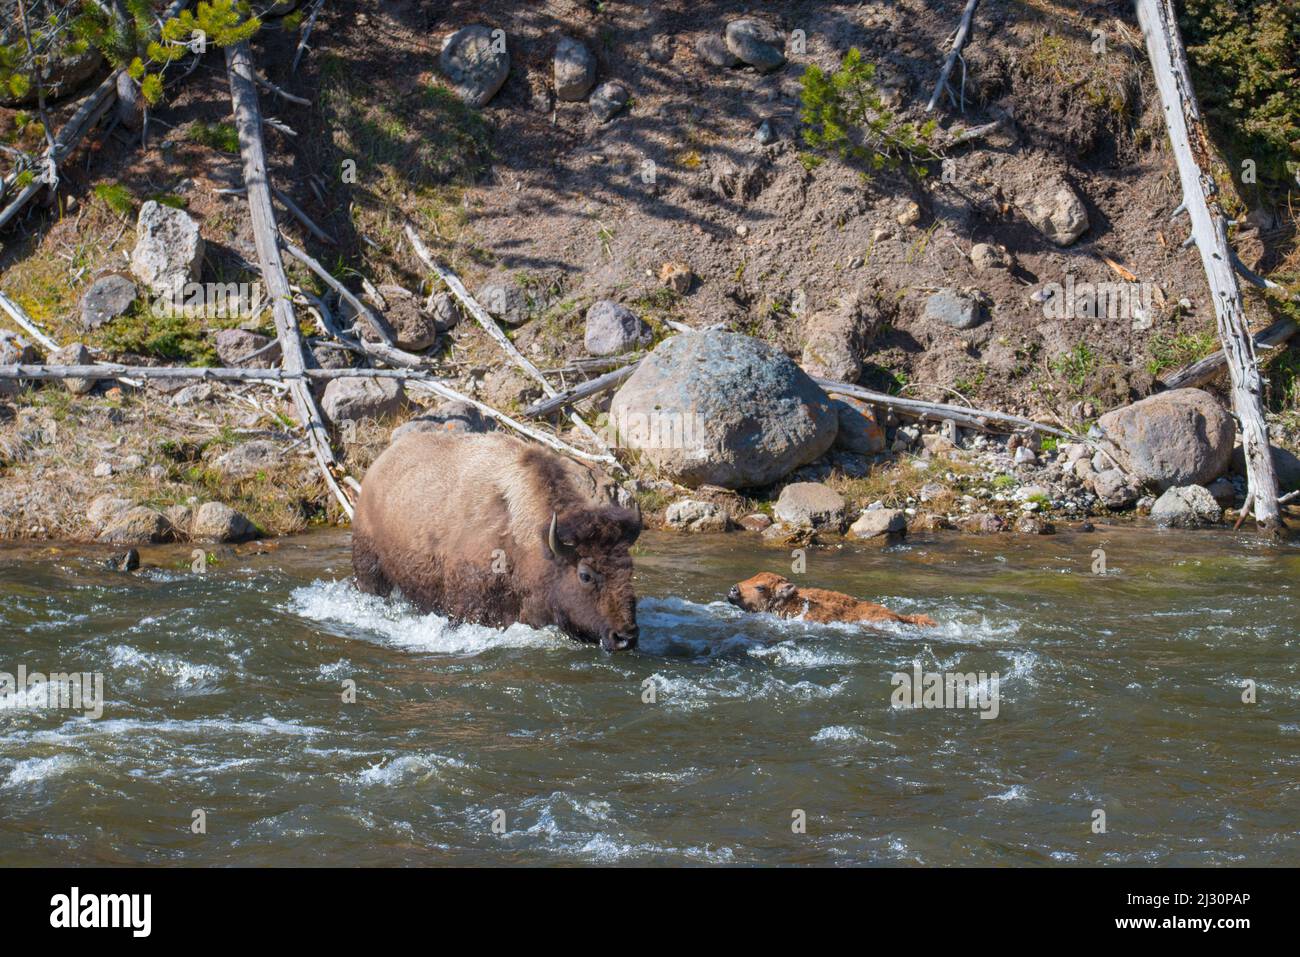 Una bisona madre protege a su pantorrilla de la corriente del río mientras cruza el Río Madison, Parque Nacional Yellowstone, Wyoming, Estados Unidos Foto de stock